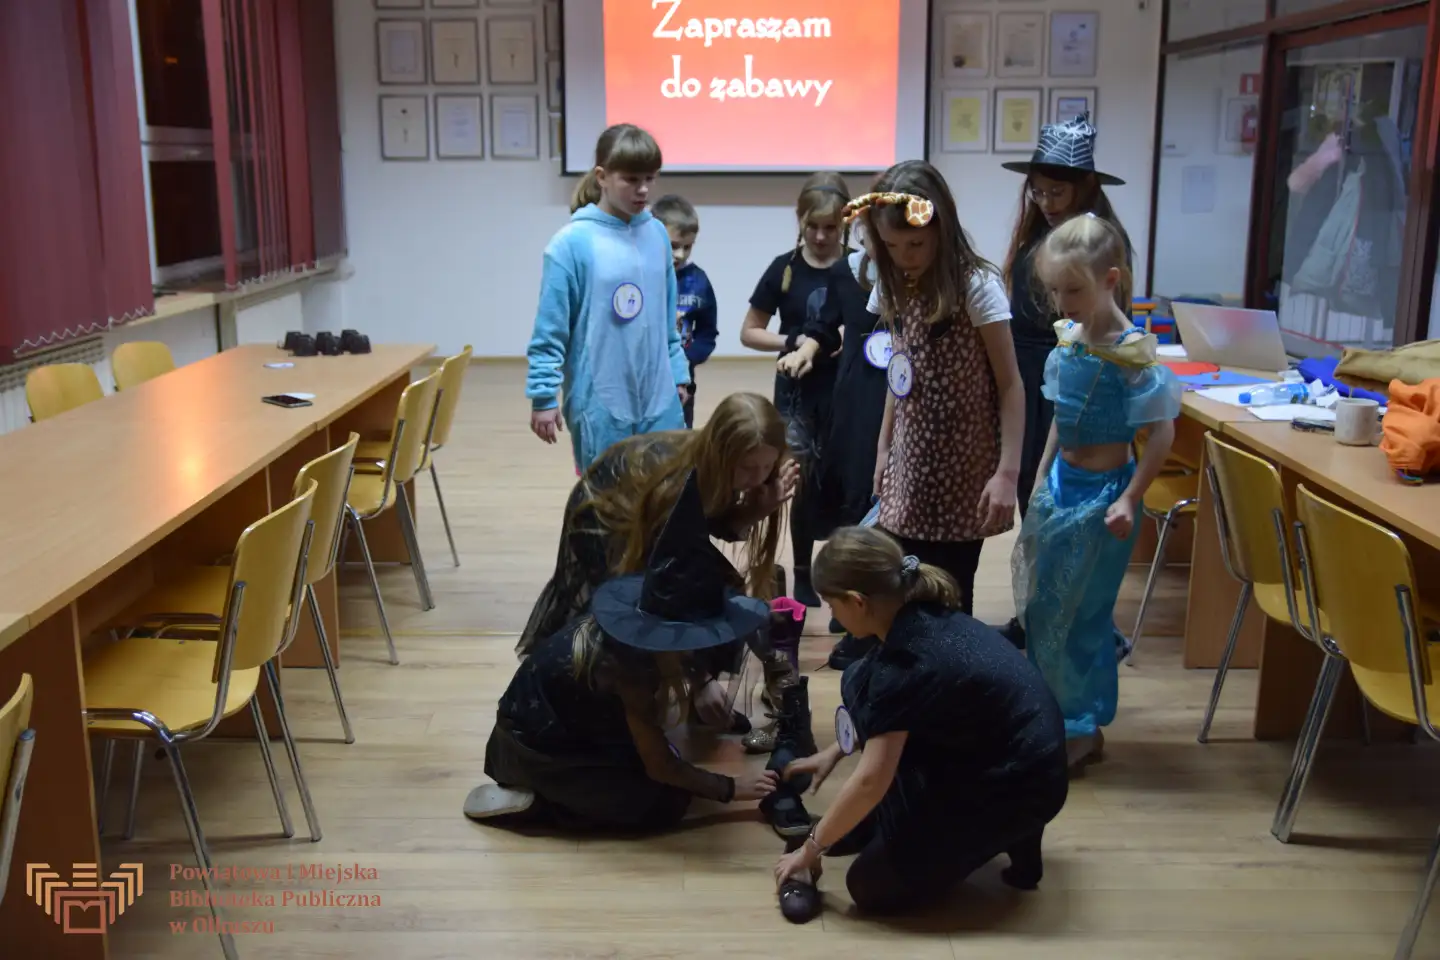 Zdjęcie zostało zrobione w trakcie zabaw andrzejkowych. Przedstawia grupę dzieci, które ustawiają buty w linii prostej.